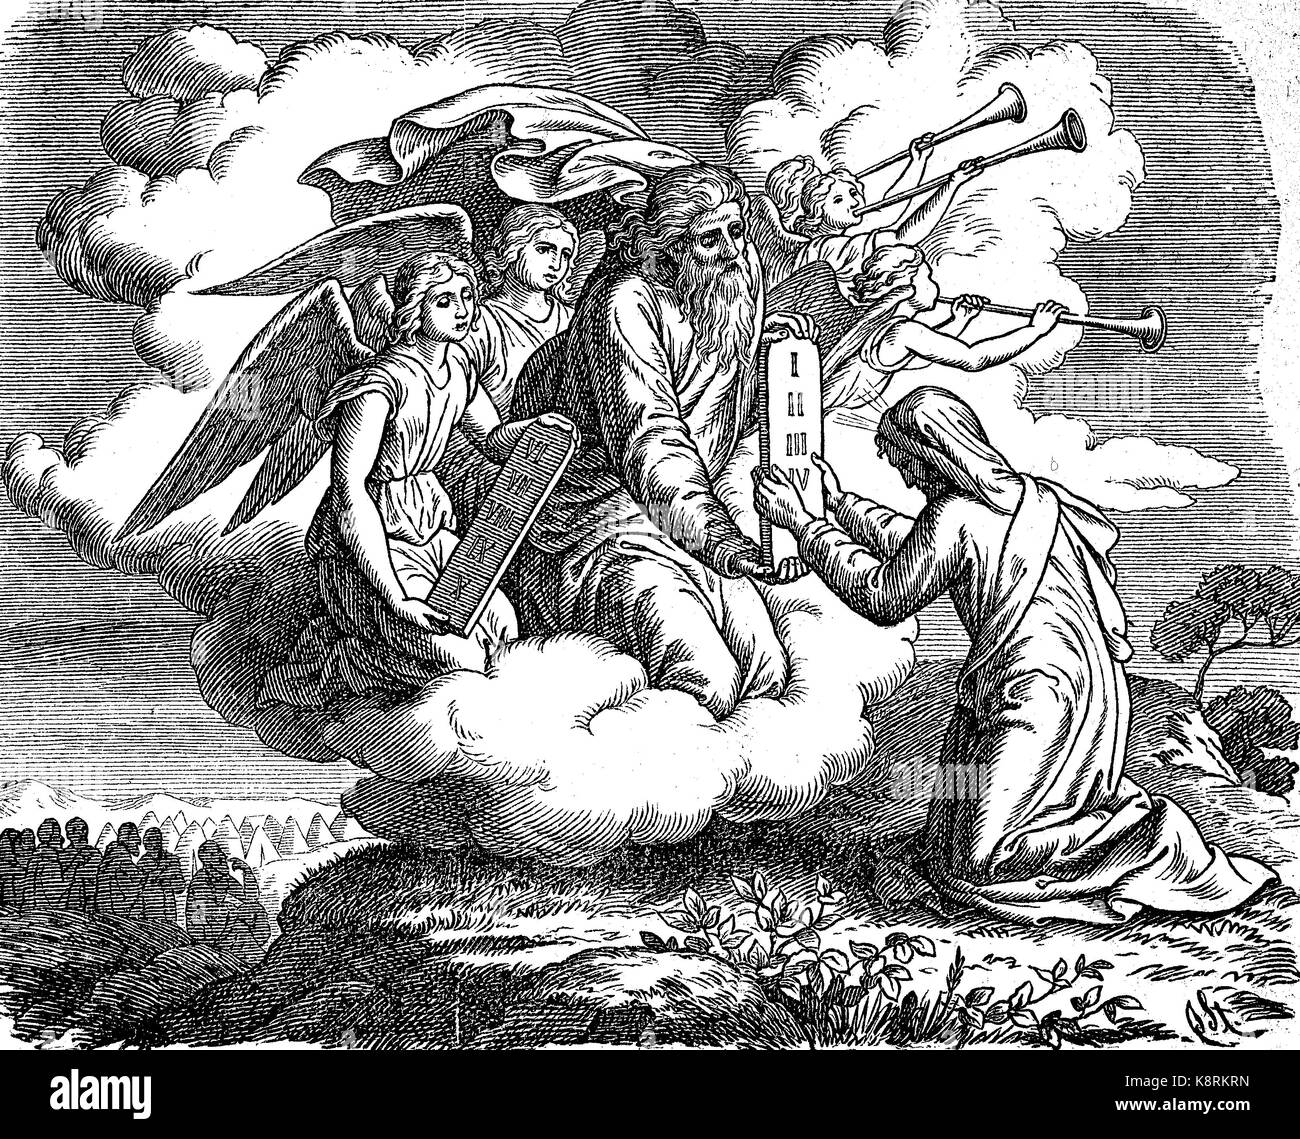 Die Verkündigung der Gebote 10, les Dix Commandements, aussi connu comme le Décalogue, sont un ensemble de lois bibliques relatives à l'éthique et du culte, l'amélioration numérique reproduction d'une gravure sur bois, publié dans le 19e siècle Banque D'Images